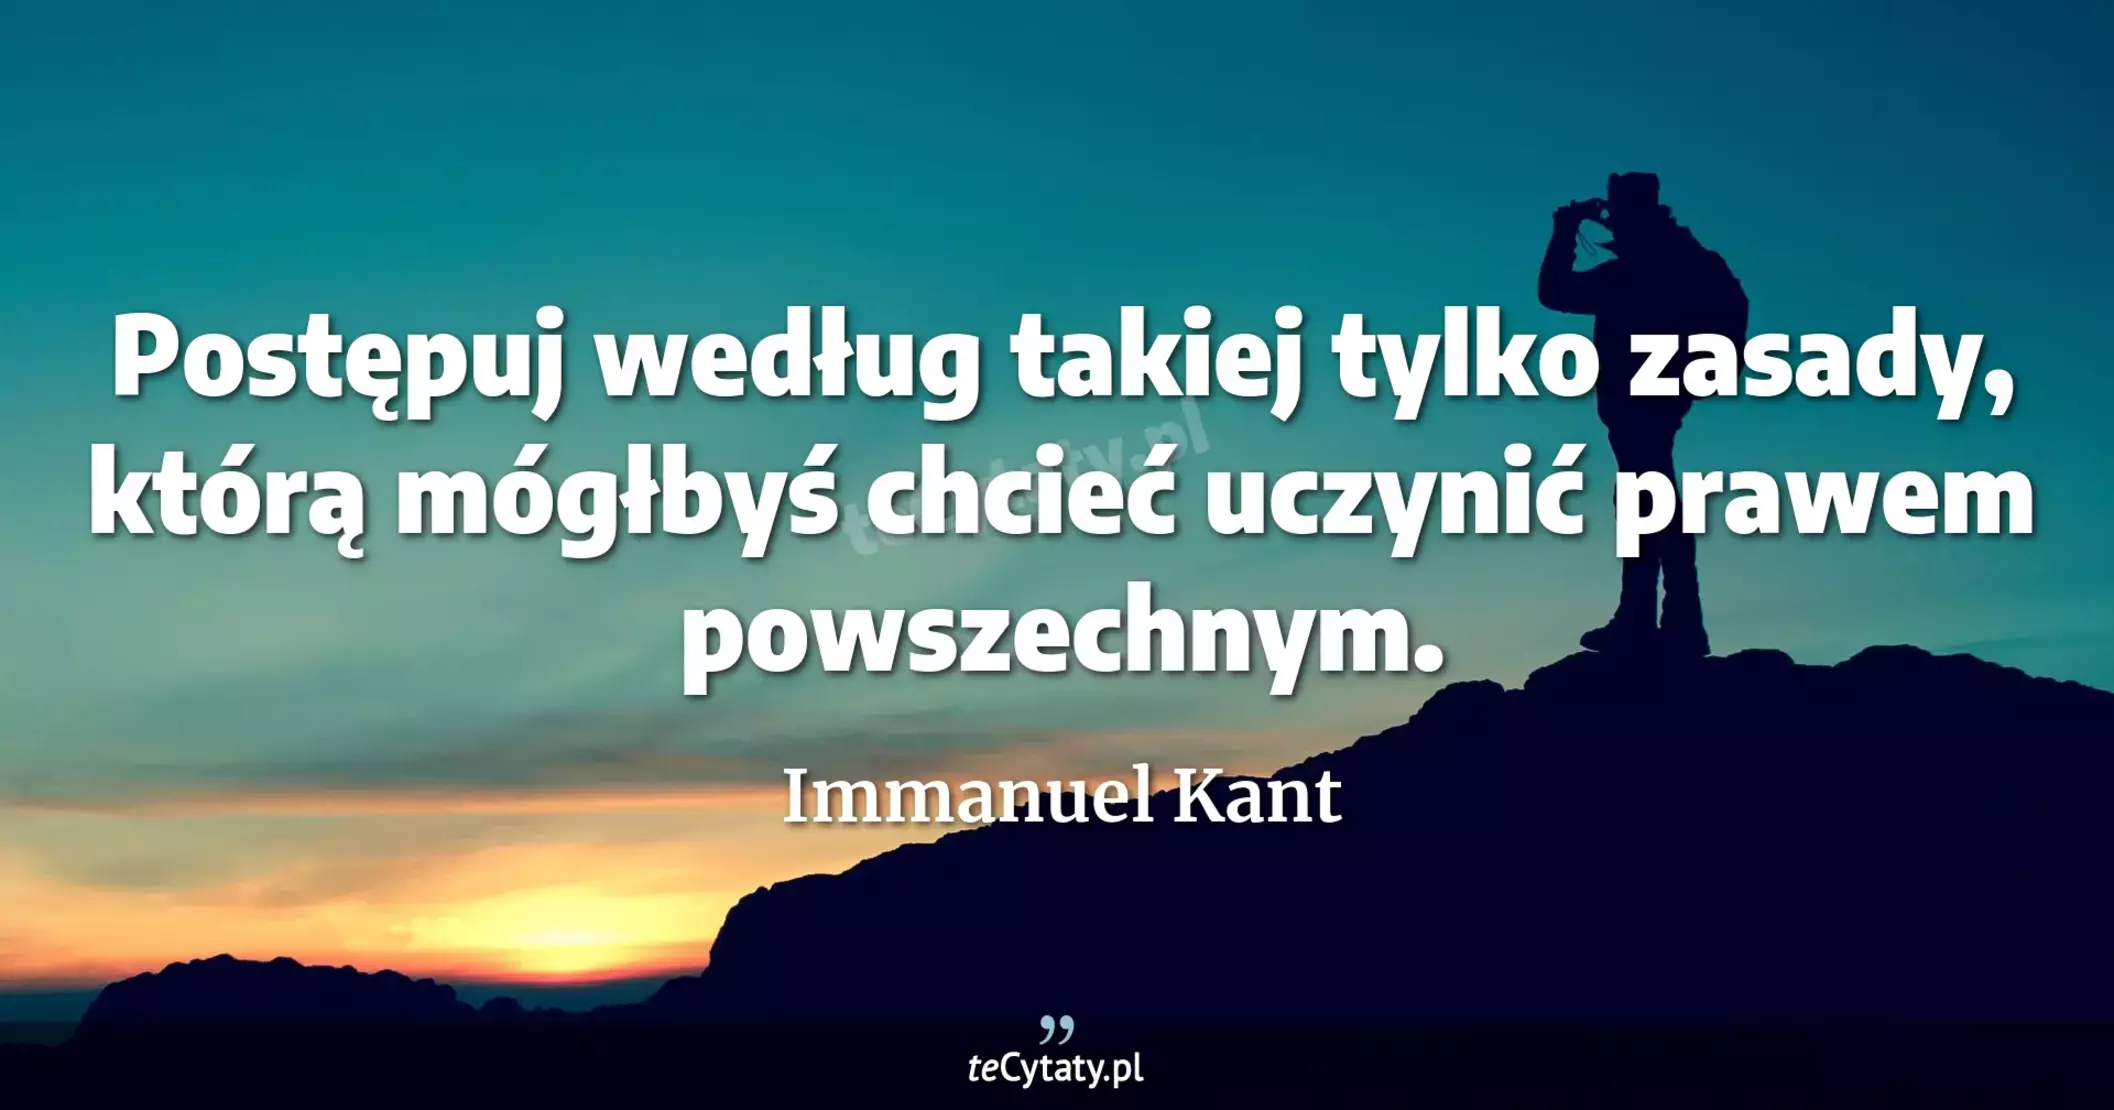 Postępuj według takiej tylko zasady, którą mógłbyś chcieć uczynić prawem powszechnym. - Immanuel Kant